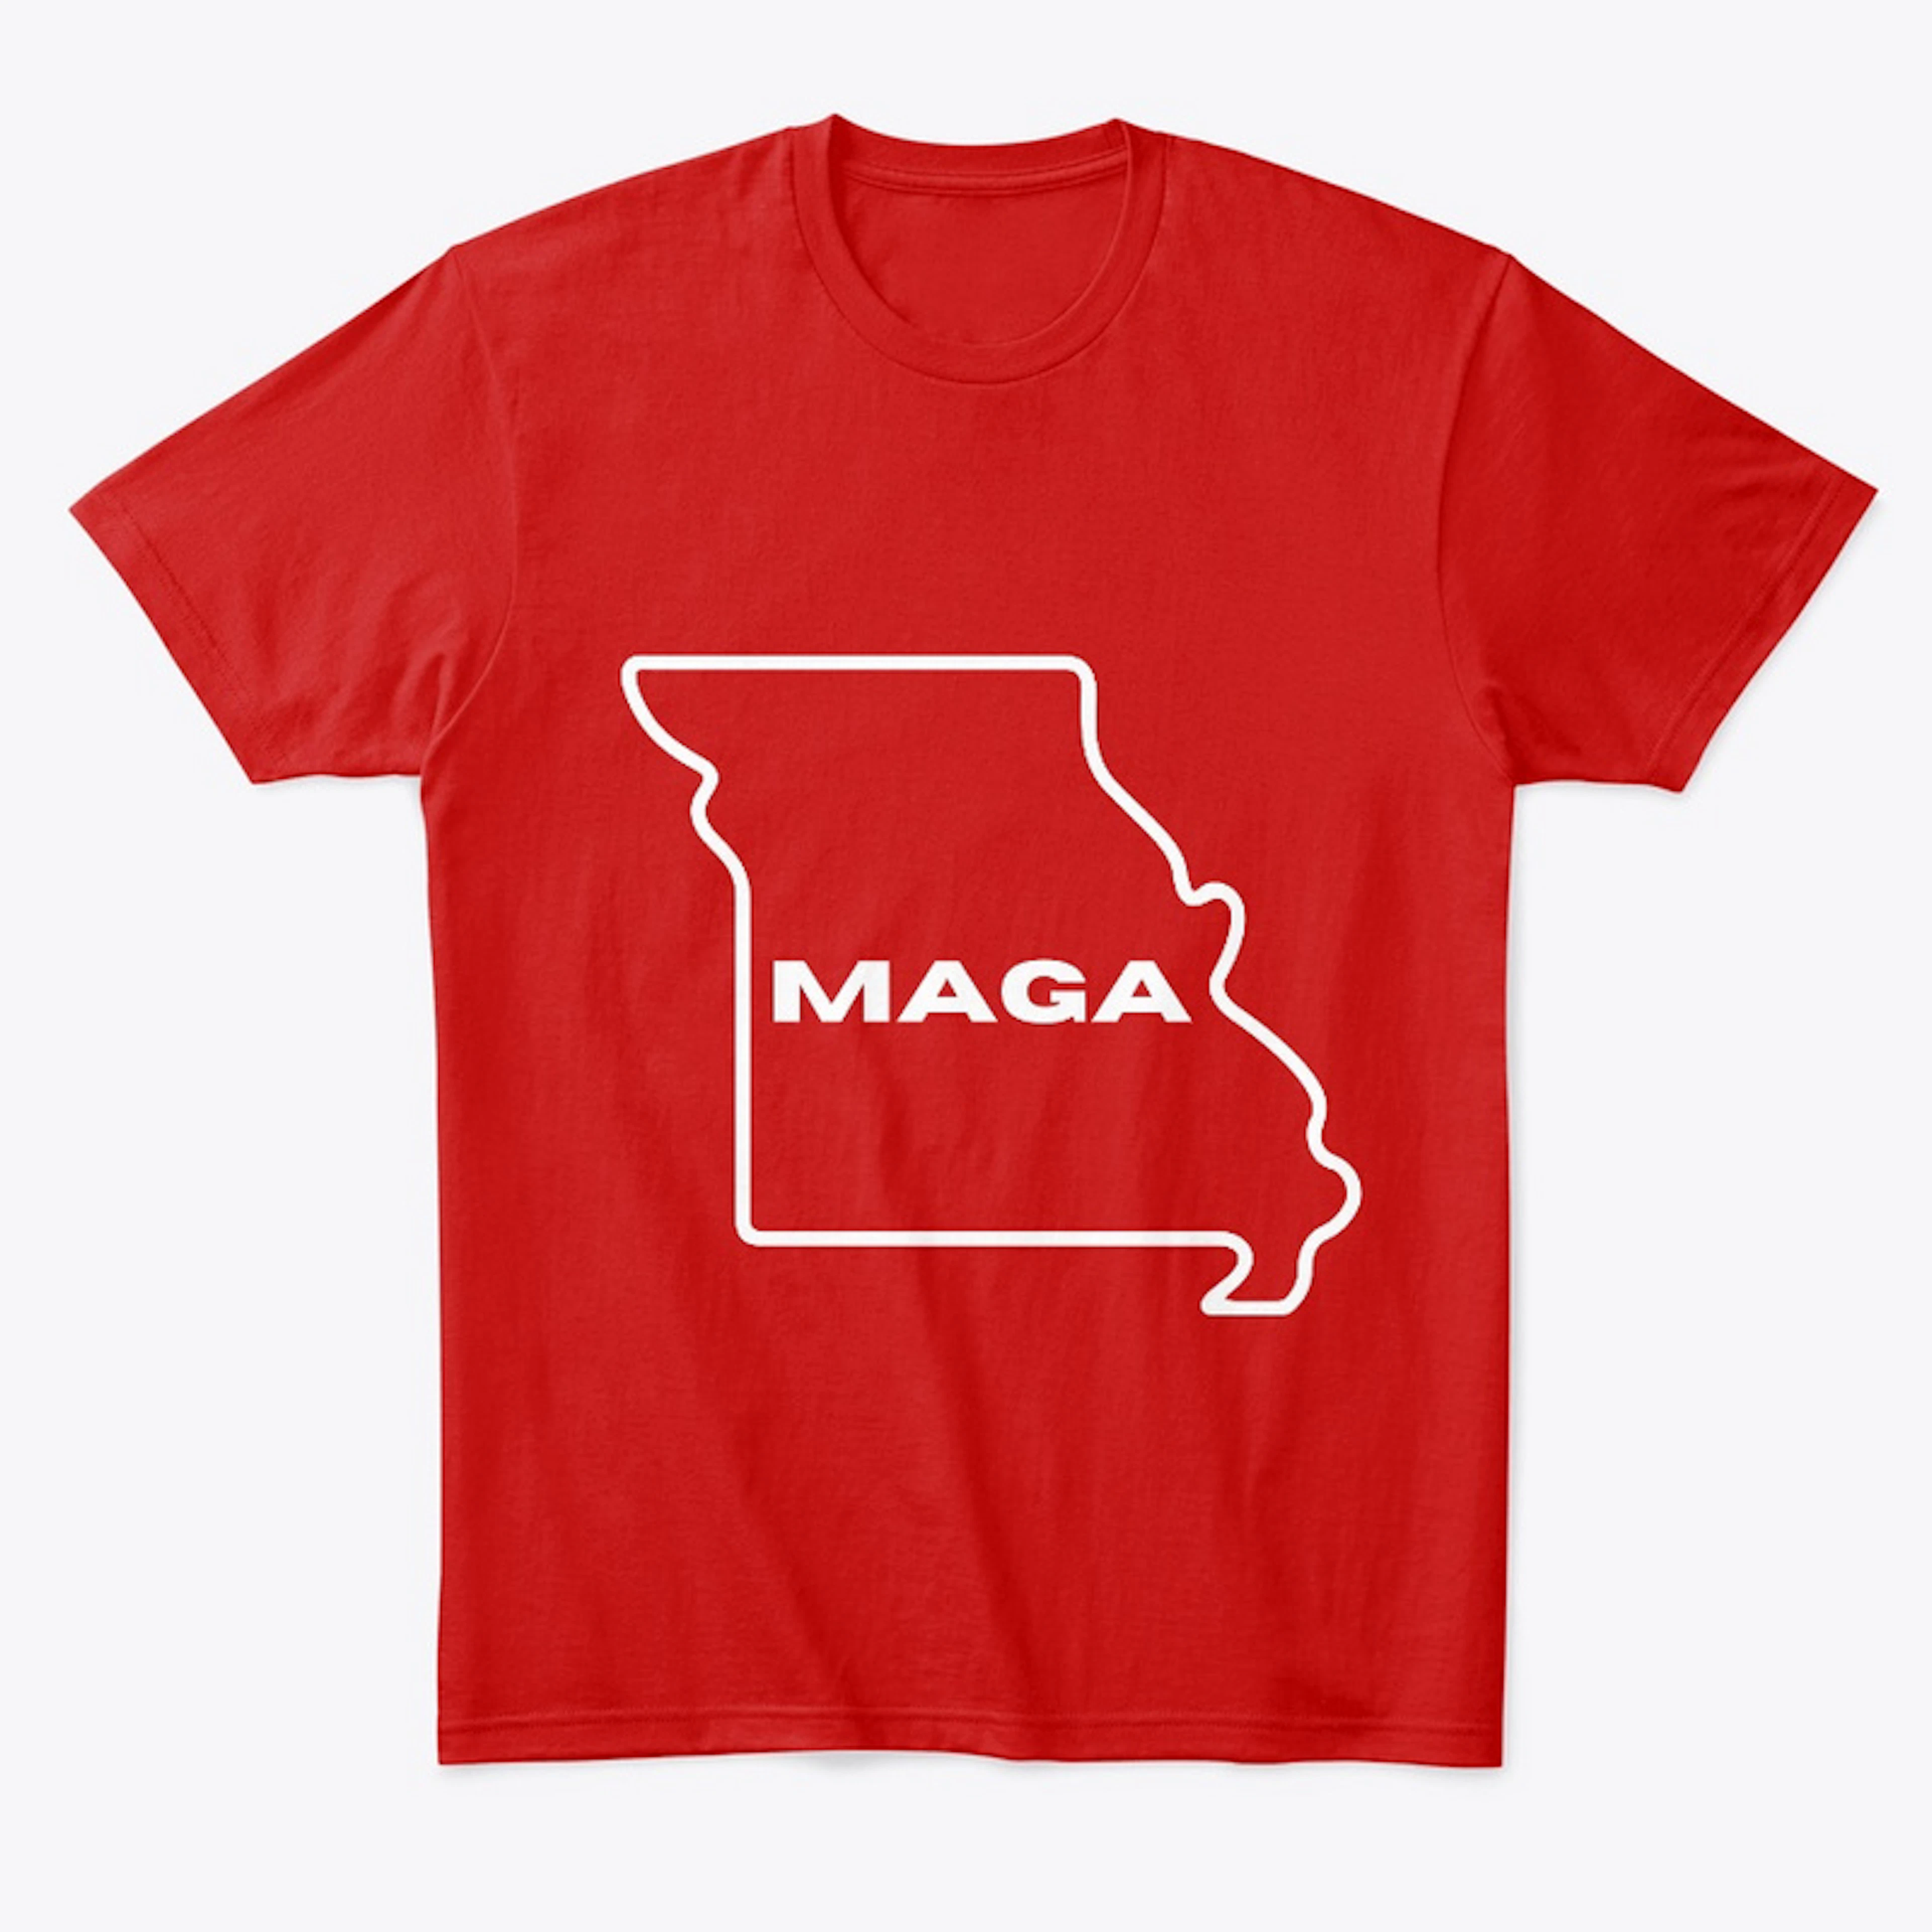 Make Missouri MAGA!